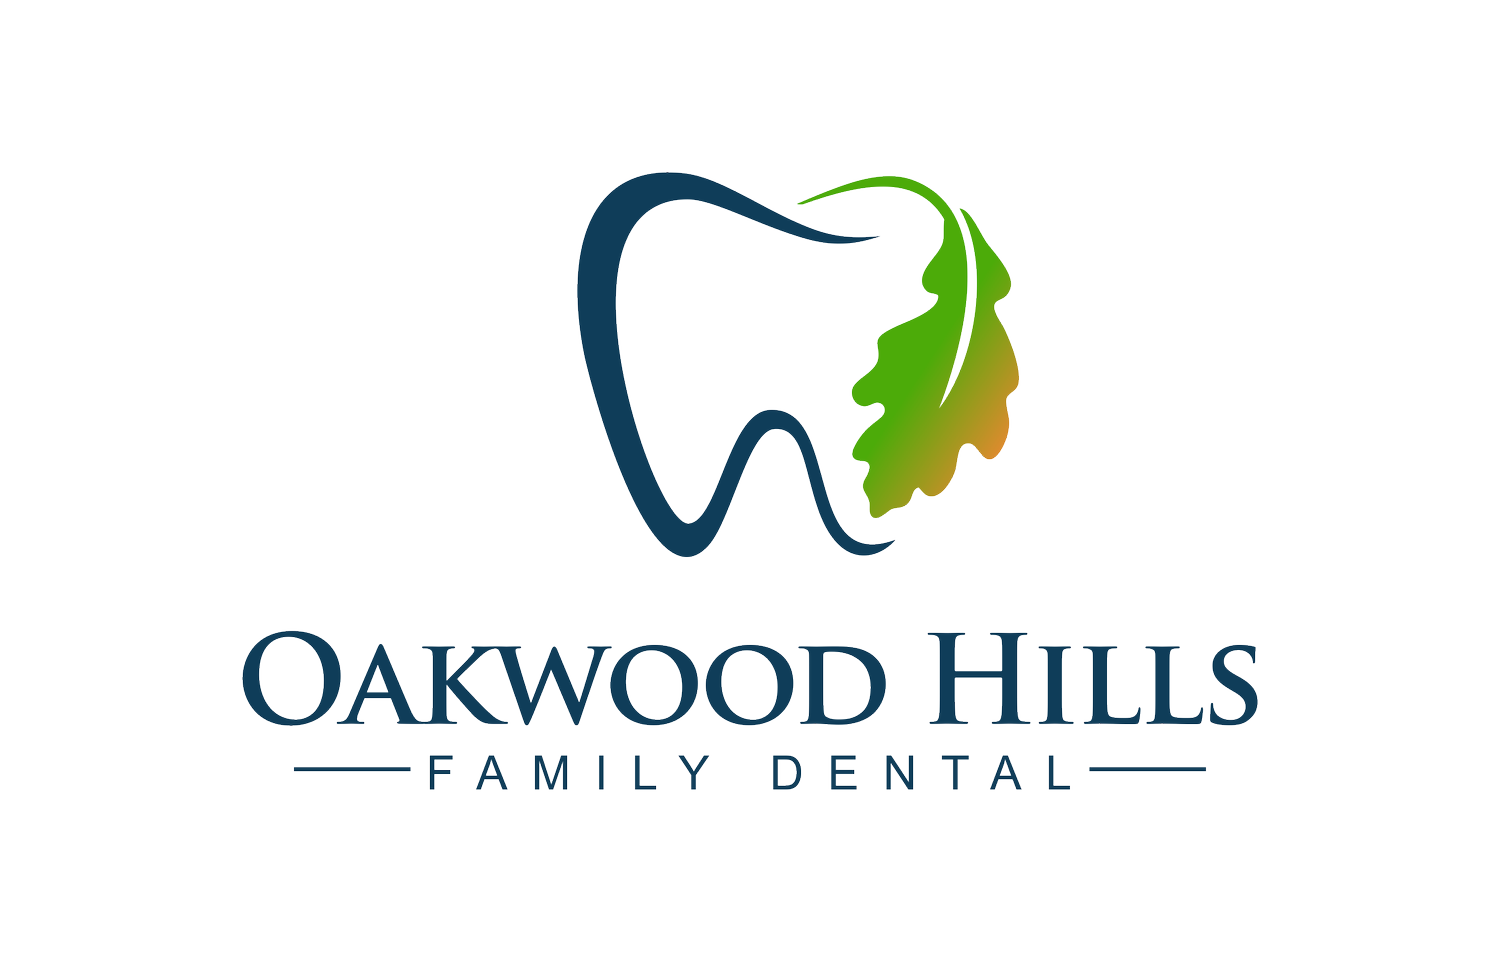 Oakwood Hills Family Dental